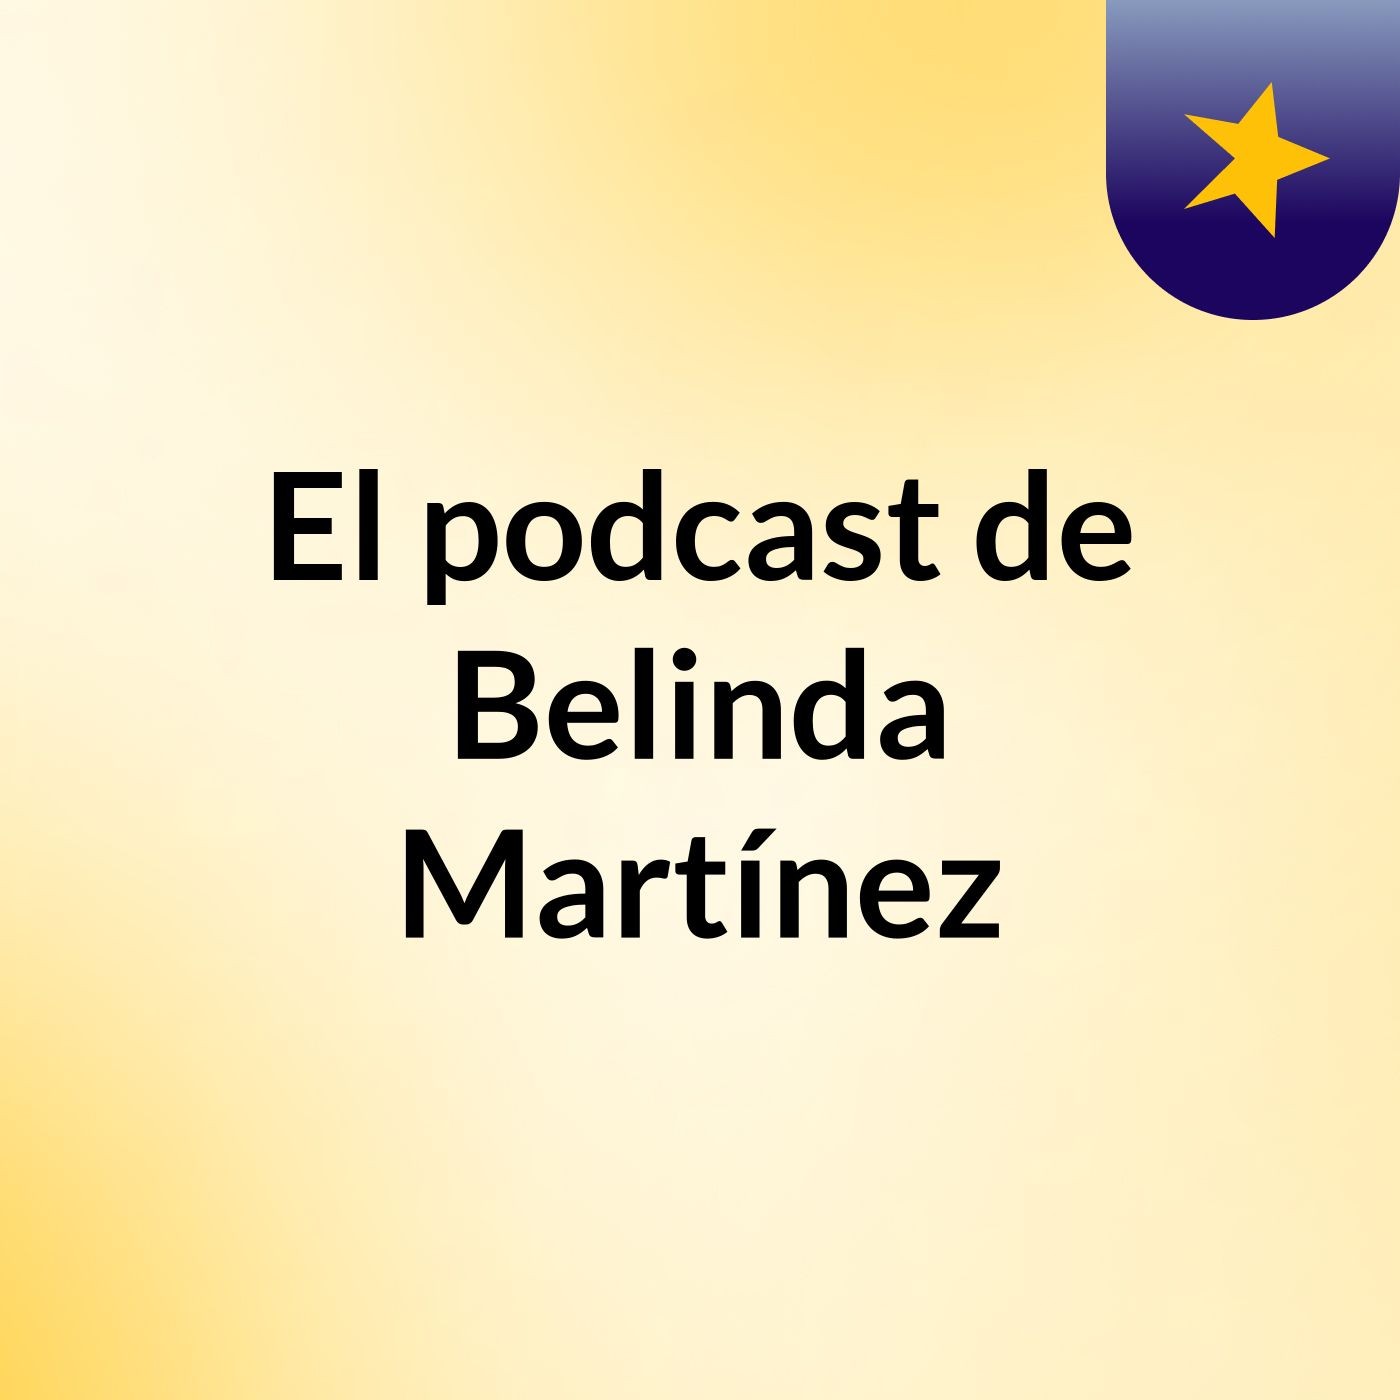 El podcast de Belinda Martínez